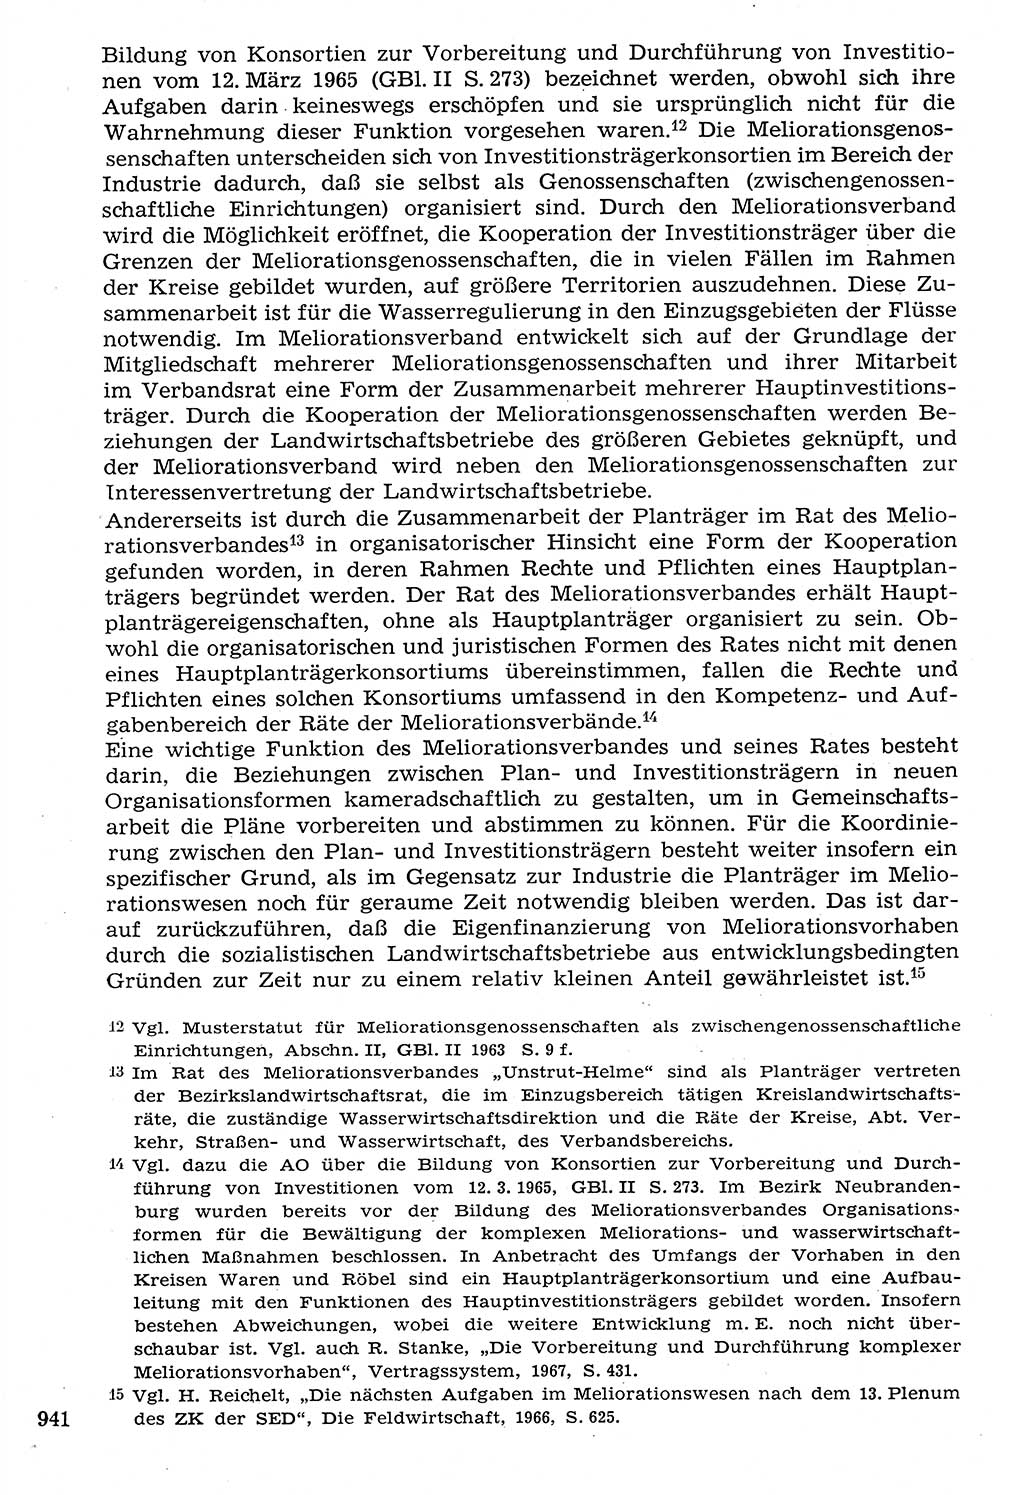 Staat und Recht (StuR), 17. Jahrgang [Deutsche Demokratische Republik (DDR)] 1968, Seite 941 (StuR DDR 1968, S. 941)